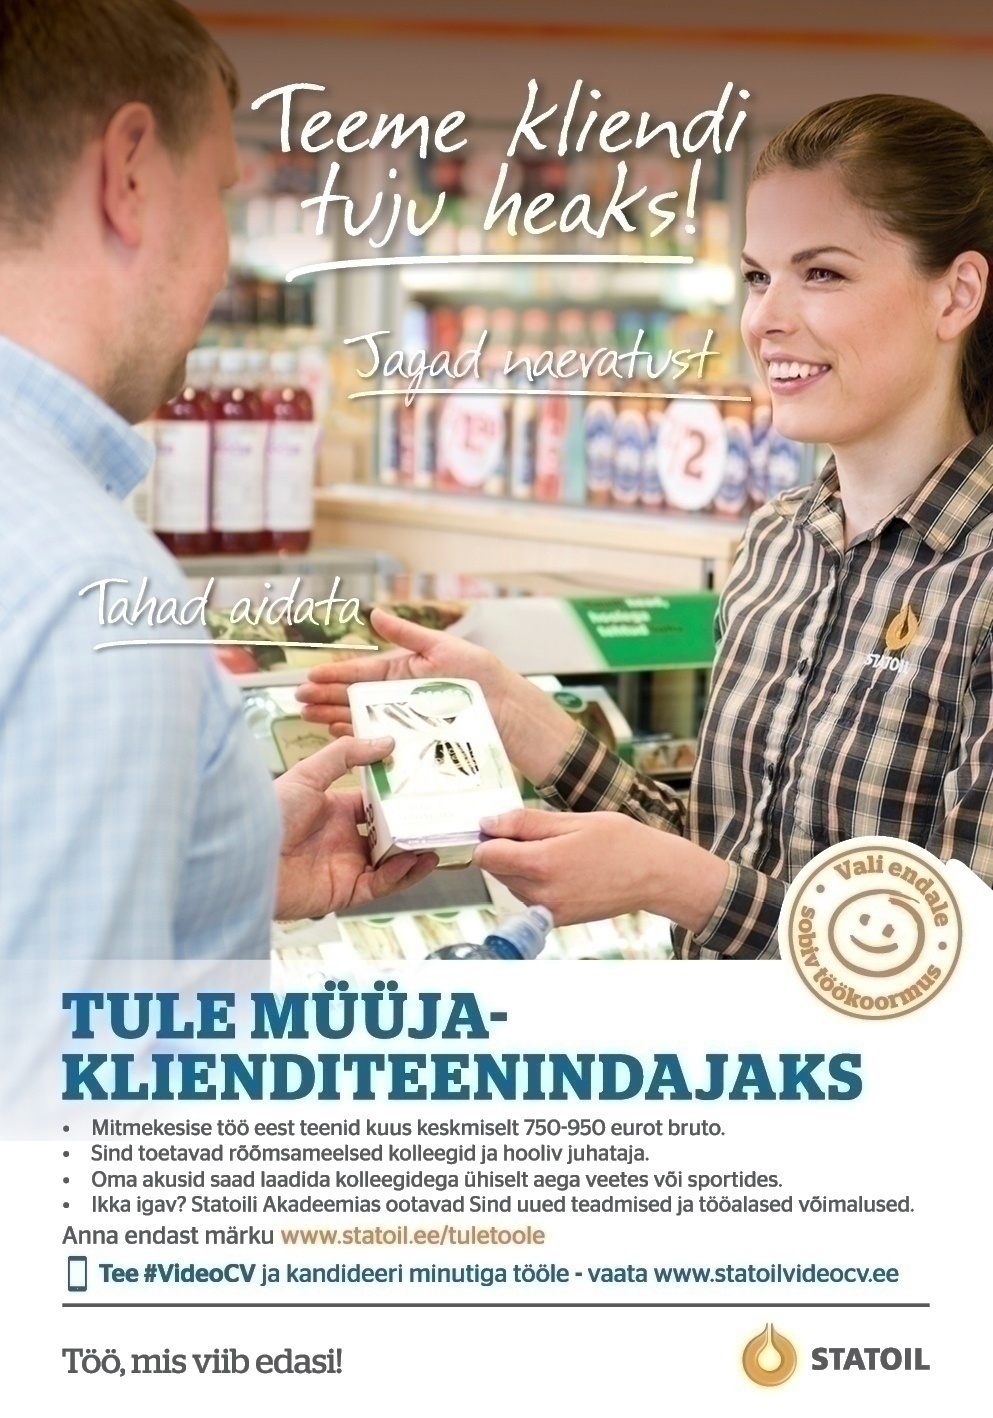 Circle K Eesti AS Müüja-klienditeenindaja Mustakivi ja Võidujooksu teenindusjaama